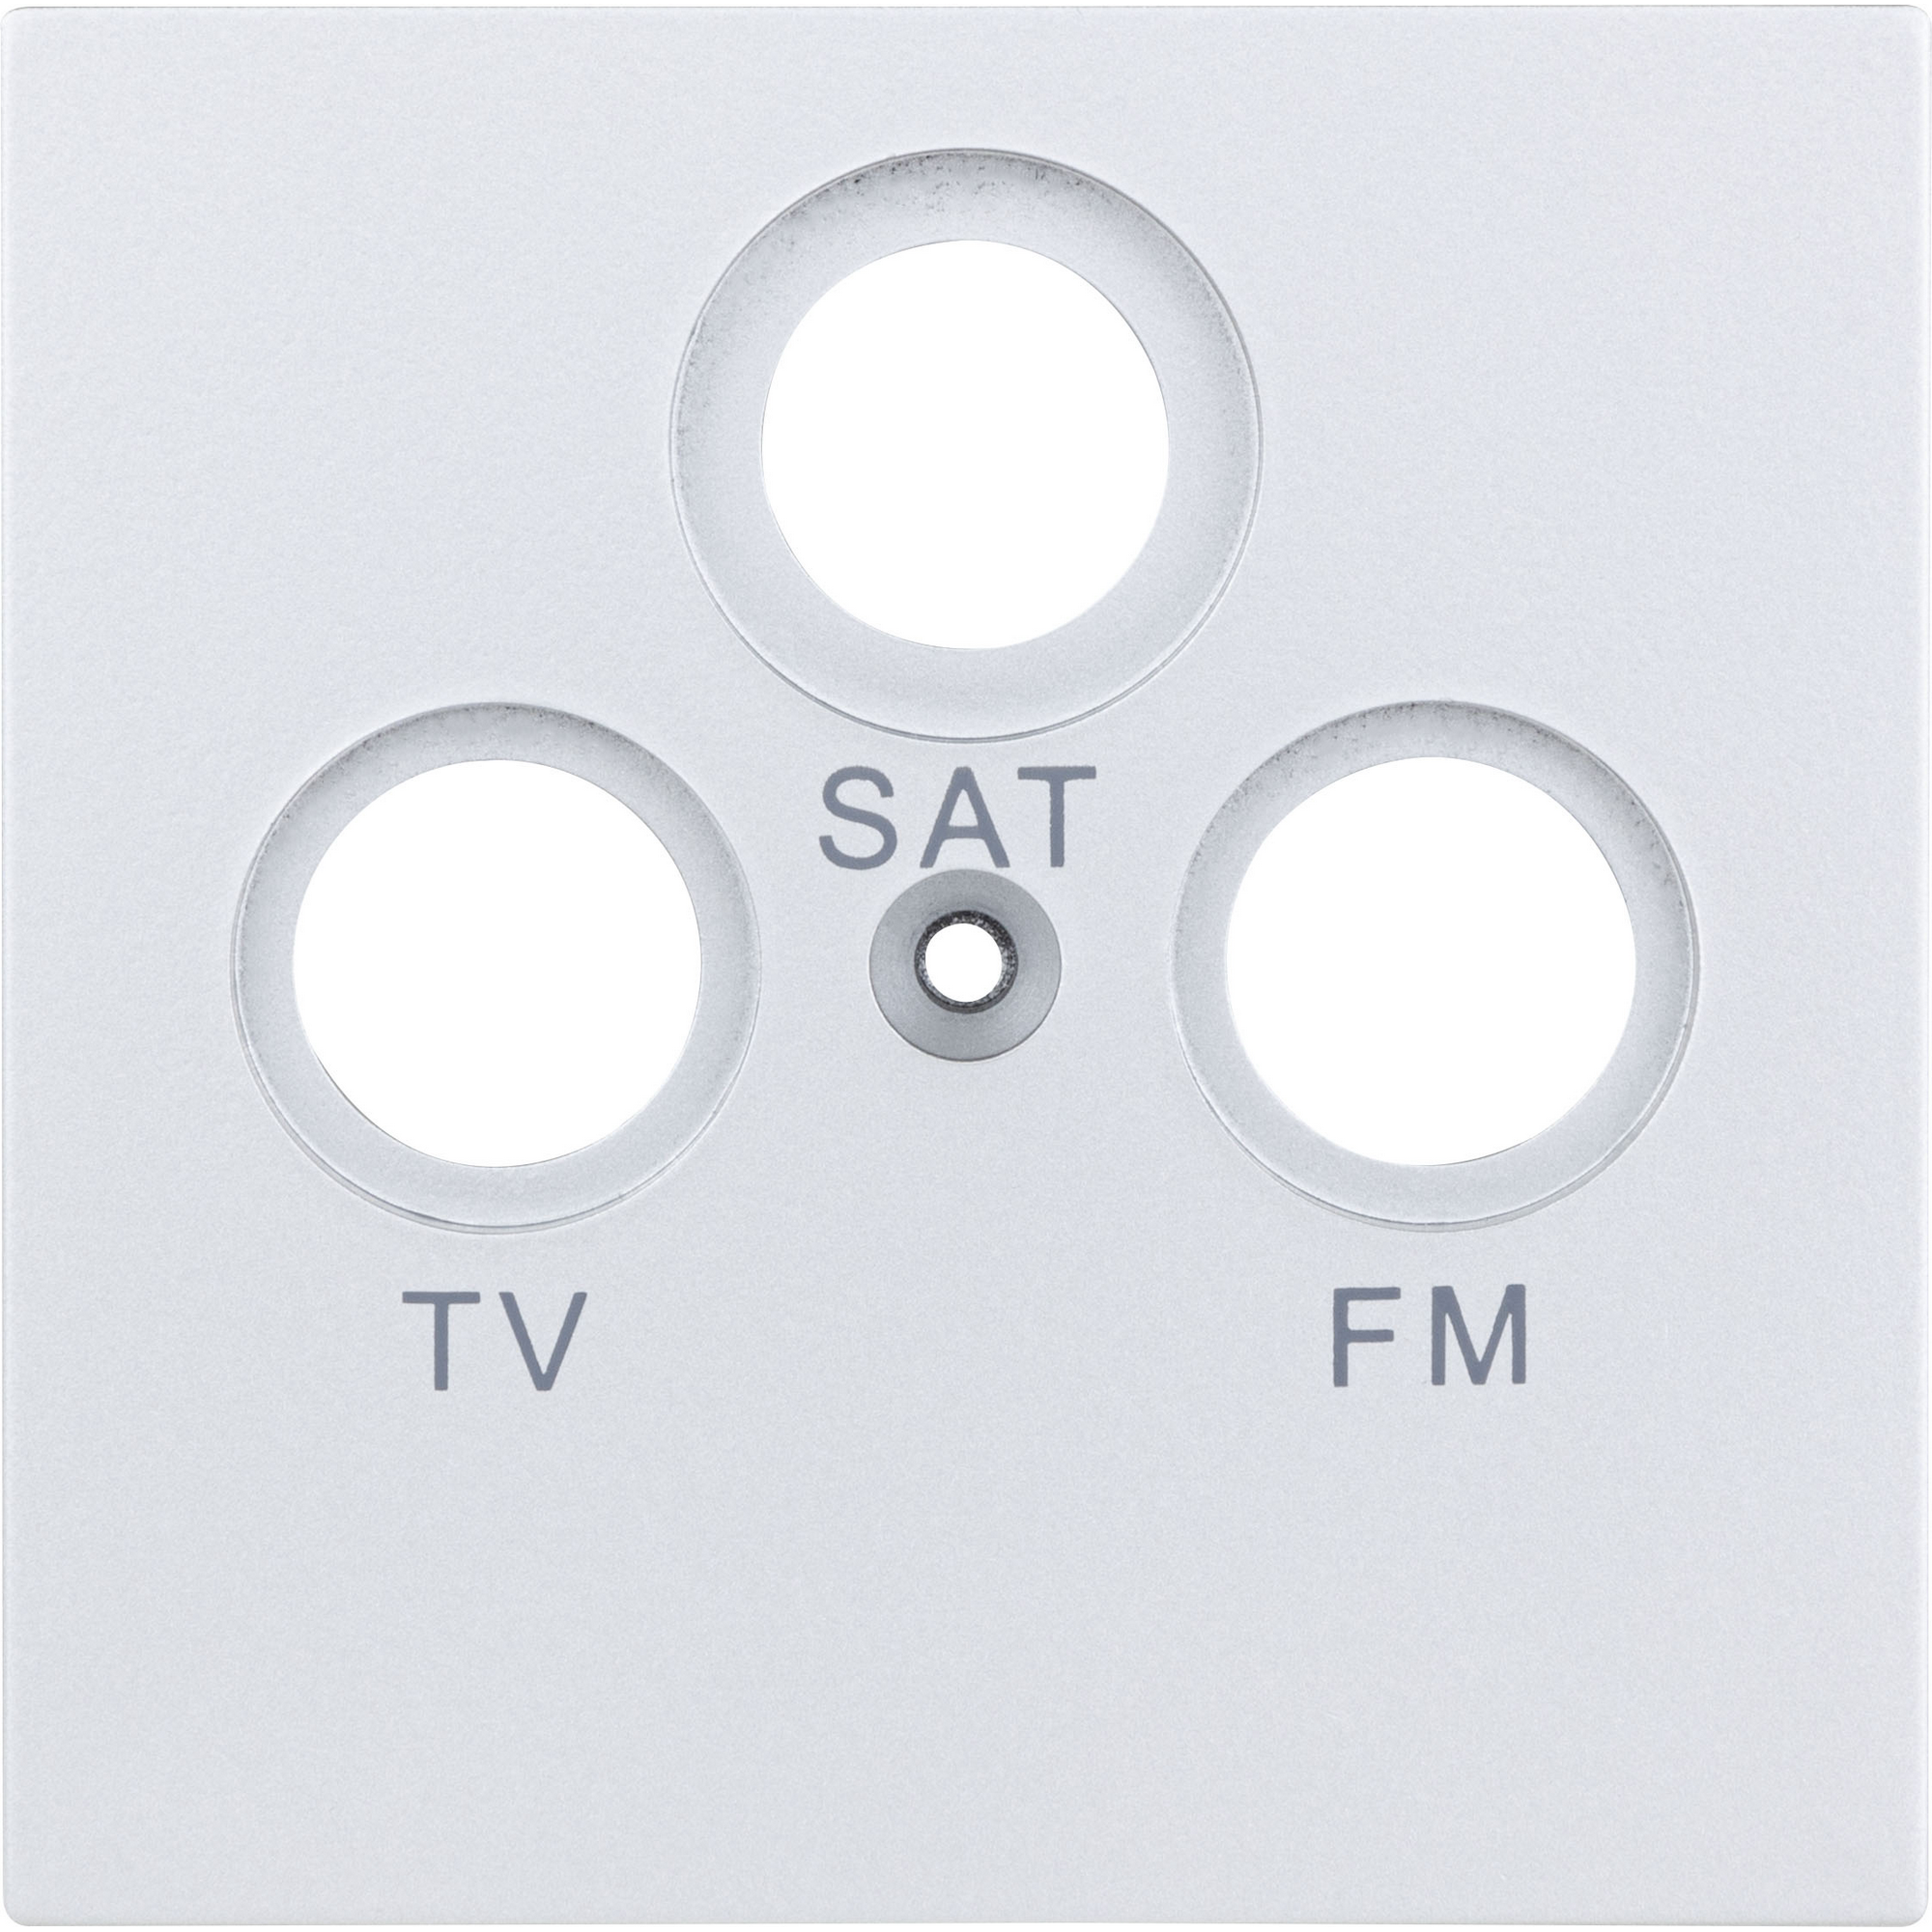 Abdeckung für Antennensteckdose 'Designline' TV/RF/SAT silbern + product picture